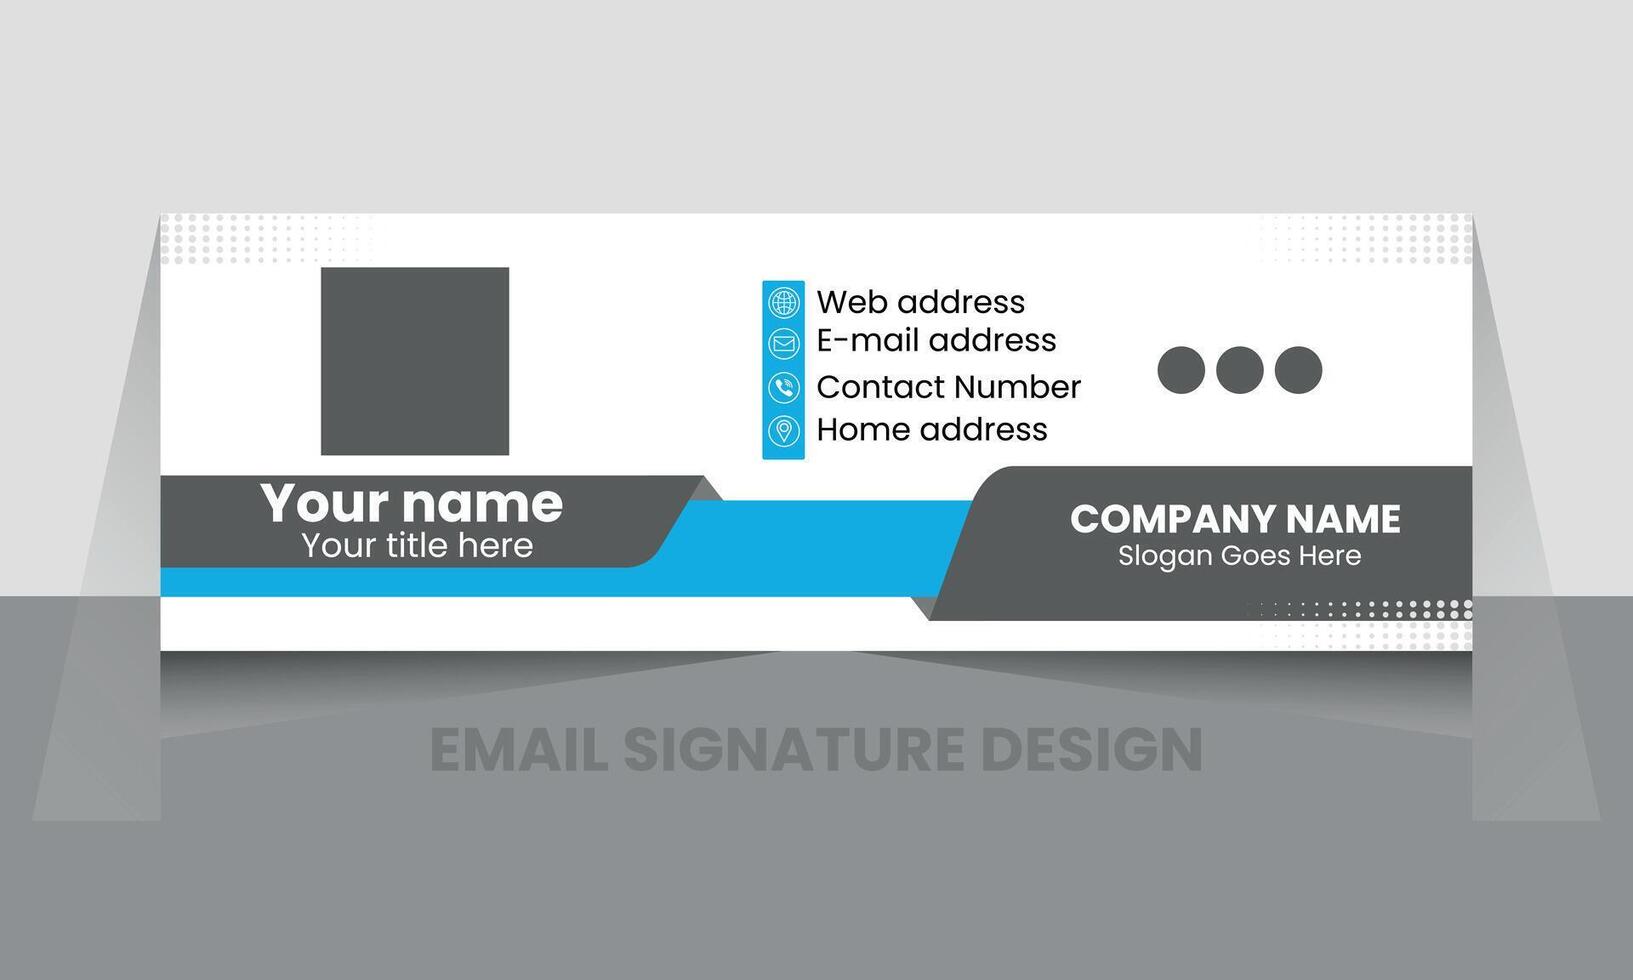 correo electrónico firma diseño o correo electrónico pie de página diseño vector